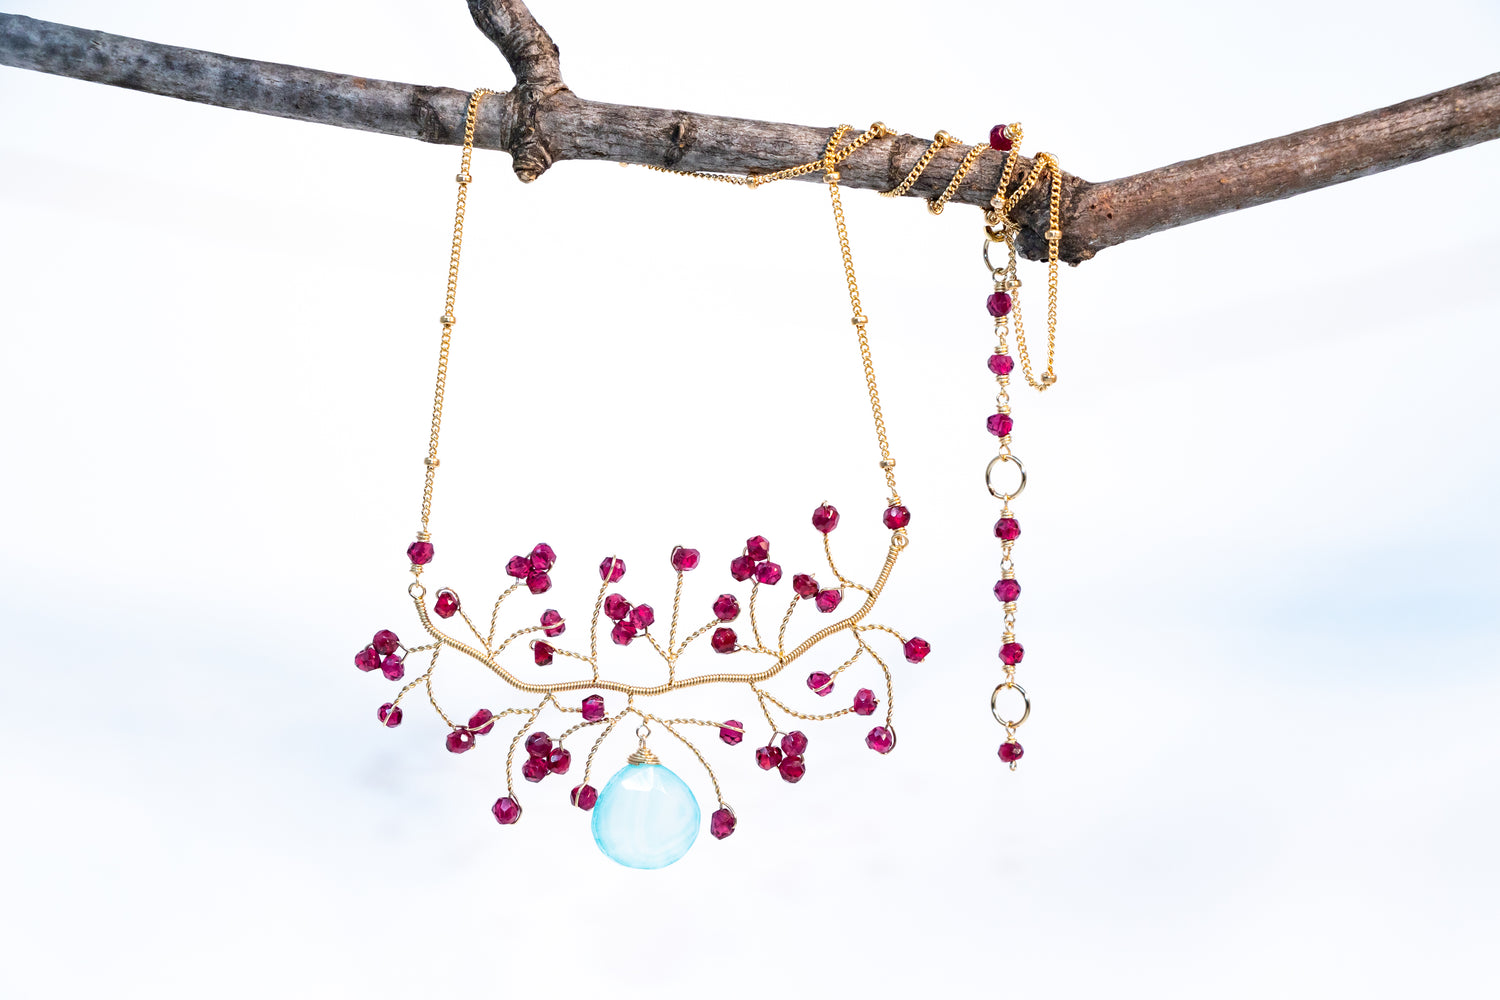 Gemstone & Wire Jewelry